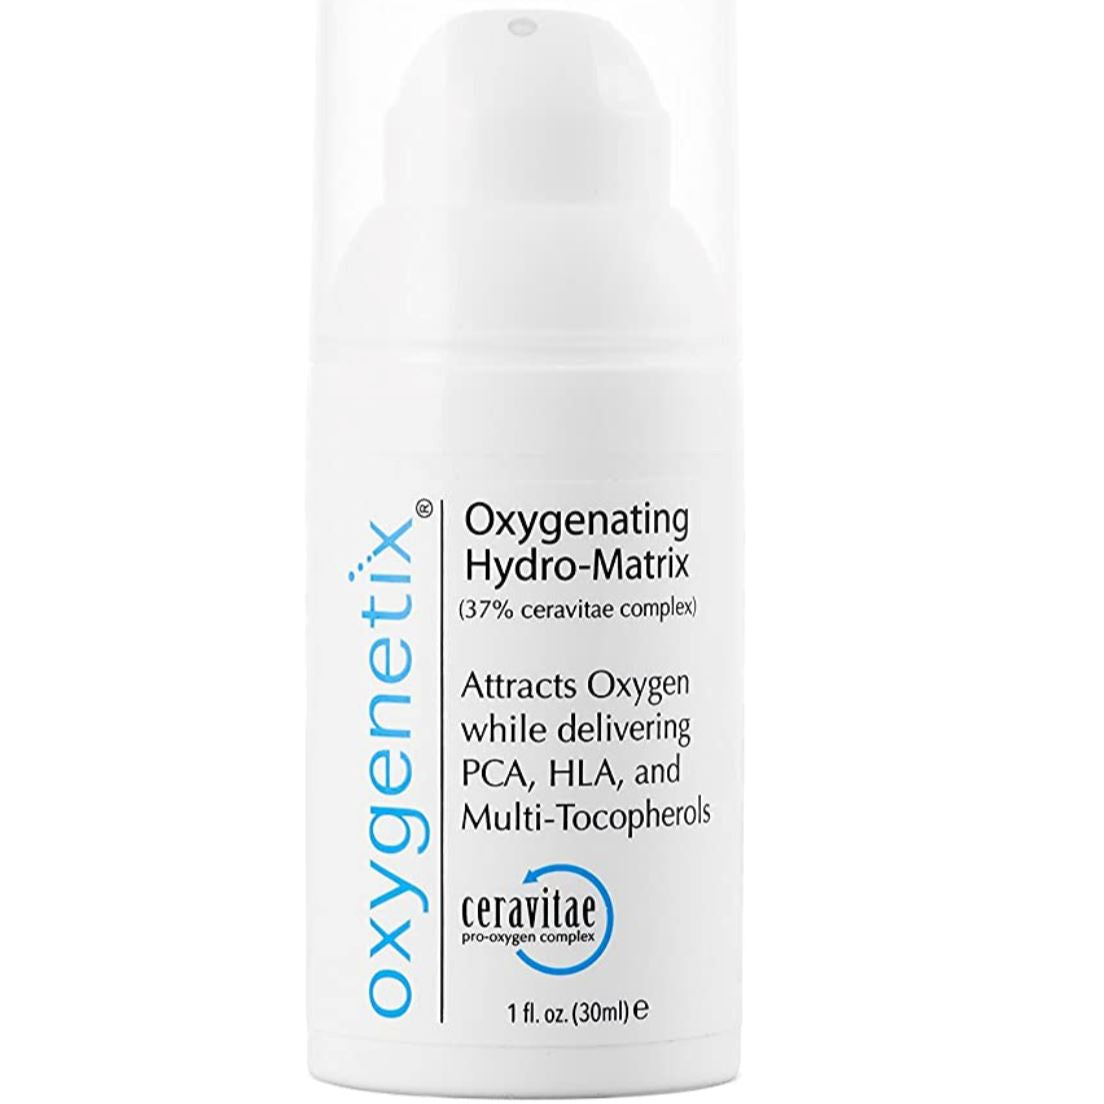 Oxygenetix Oxygenating Hydro-Matrix Oxygenetix 1 fl. oz. (30ml) Shop at Exclusive Beauty Club